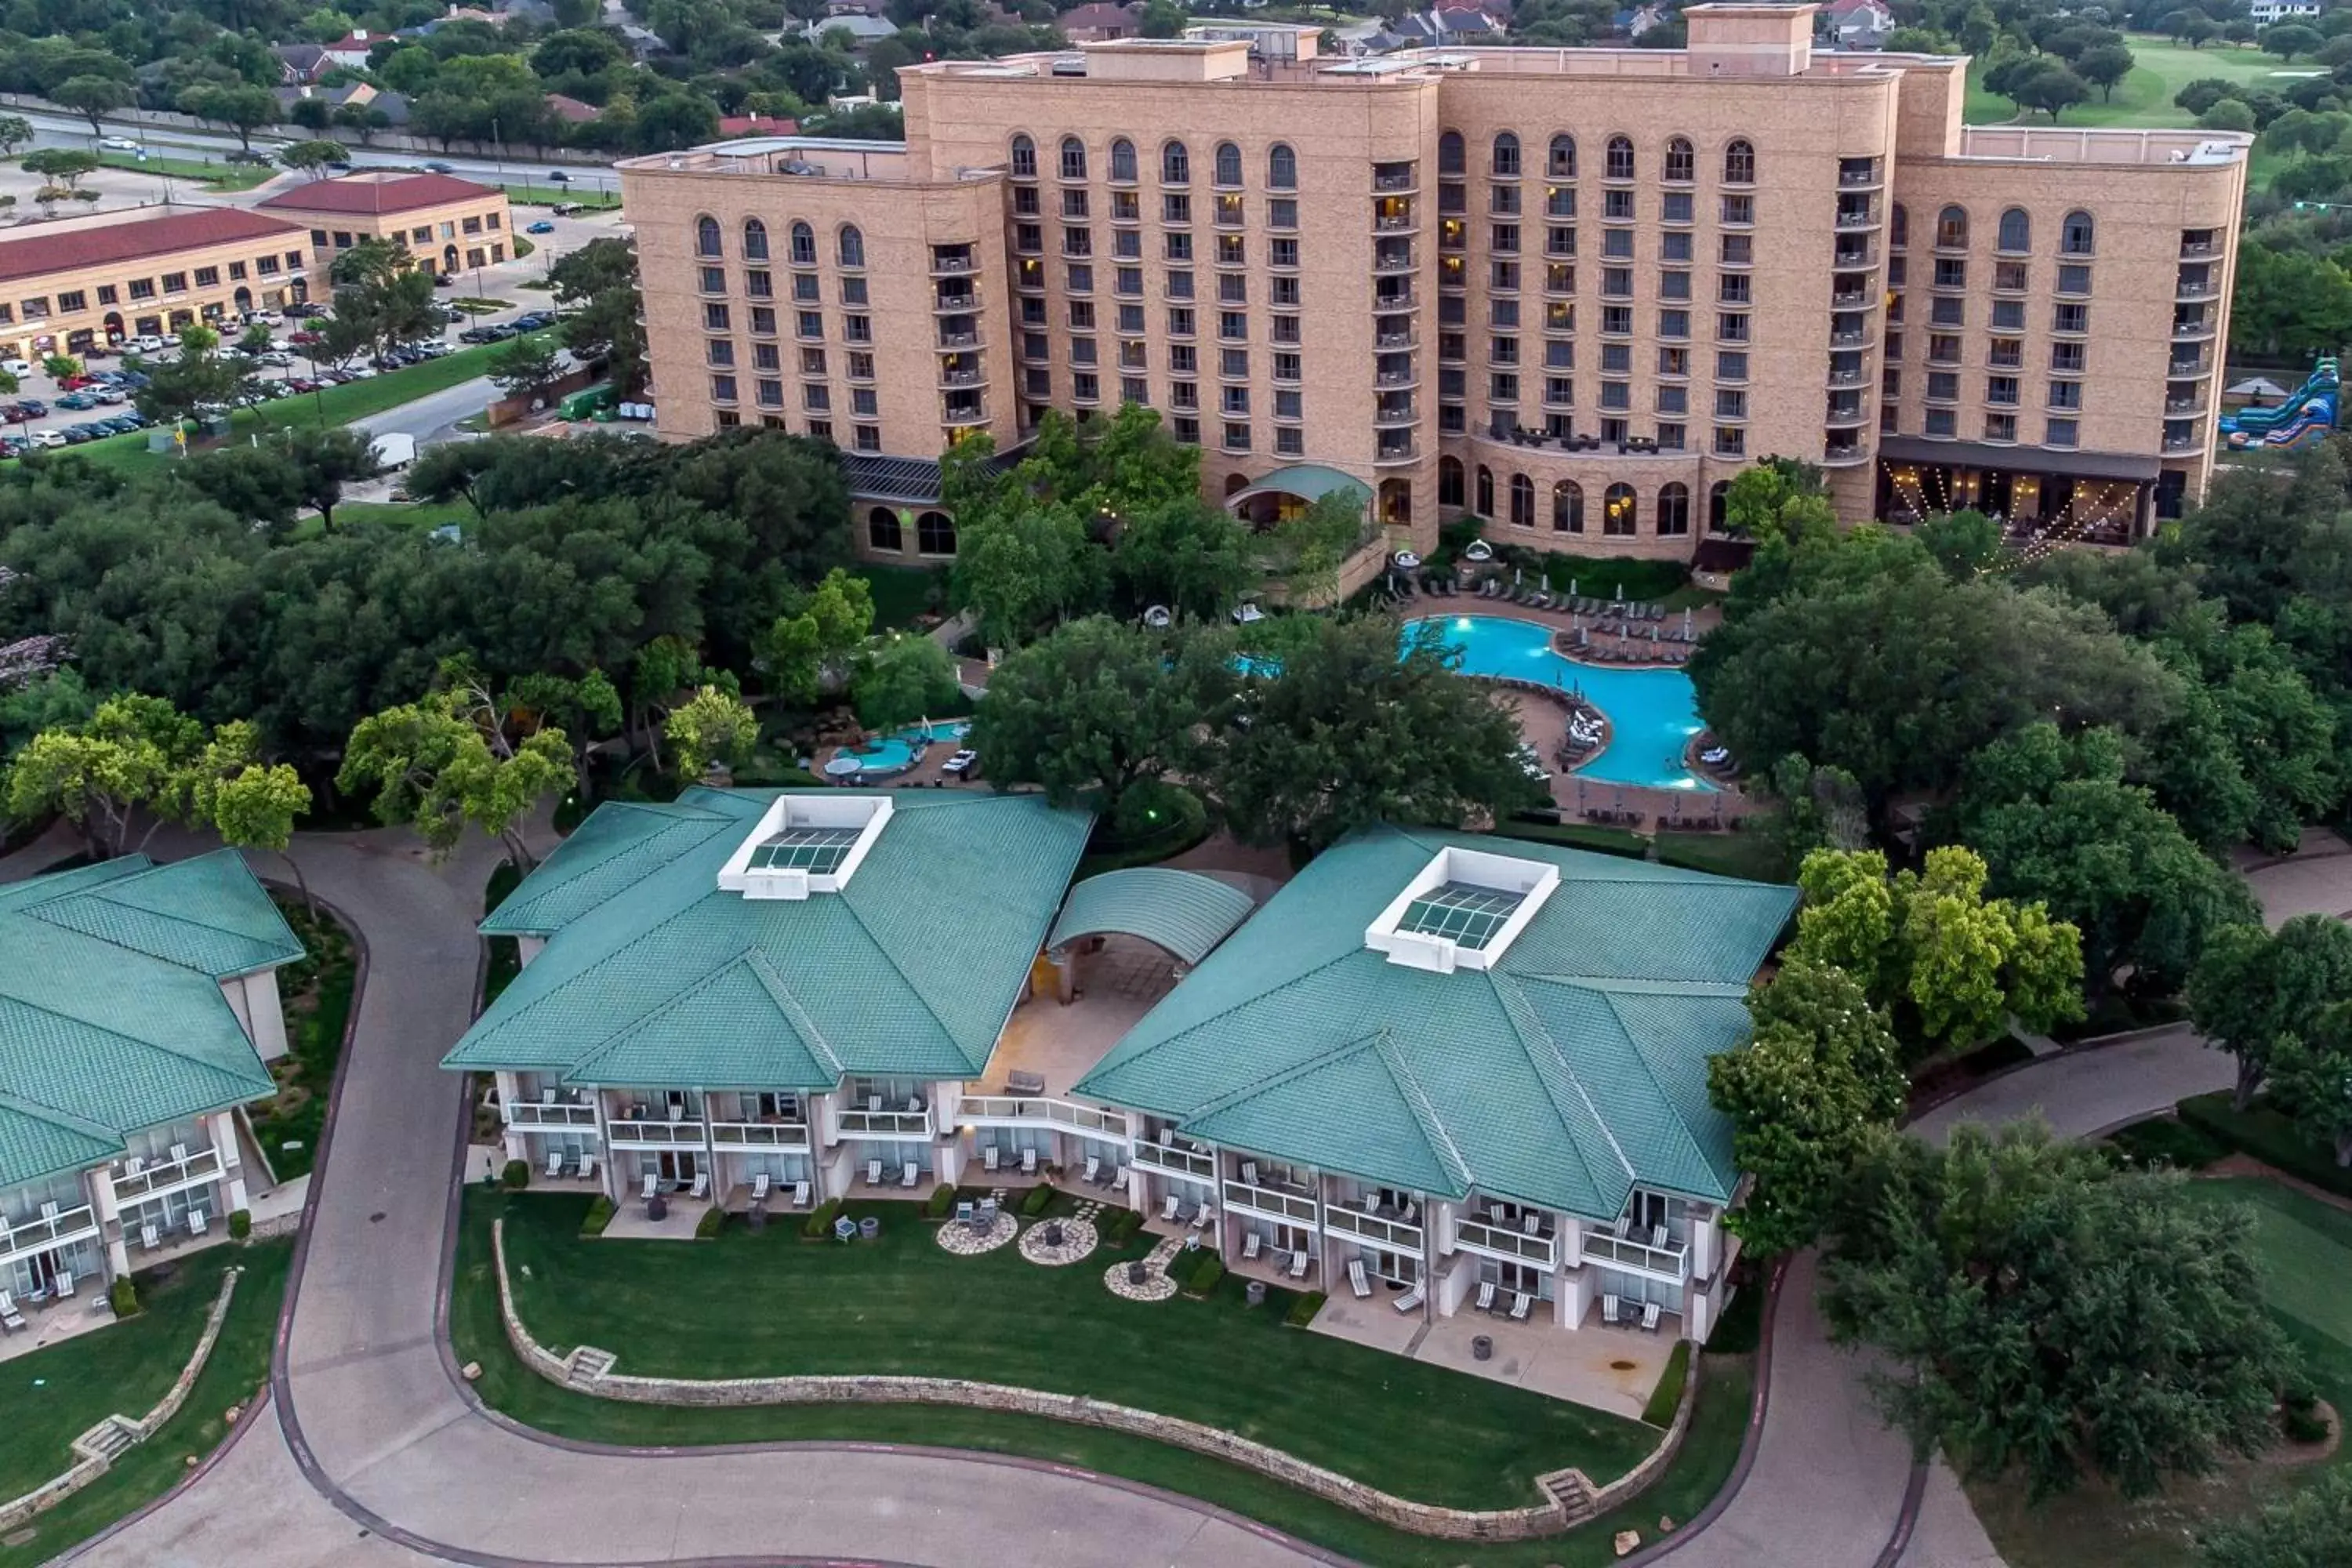 Property building, Bird's-eye View in The Las Colinas Resort, Dallas